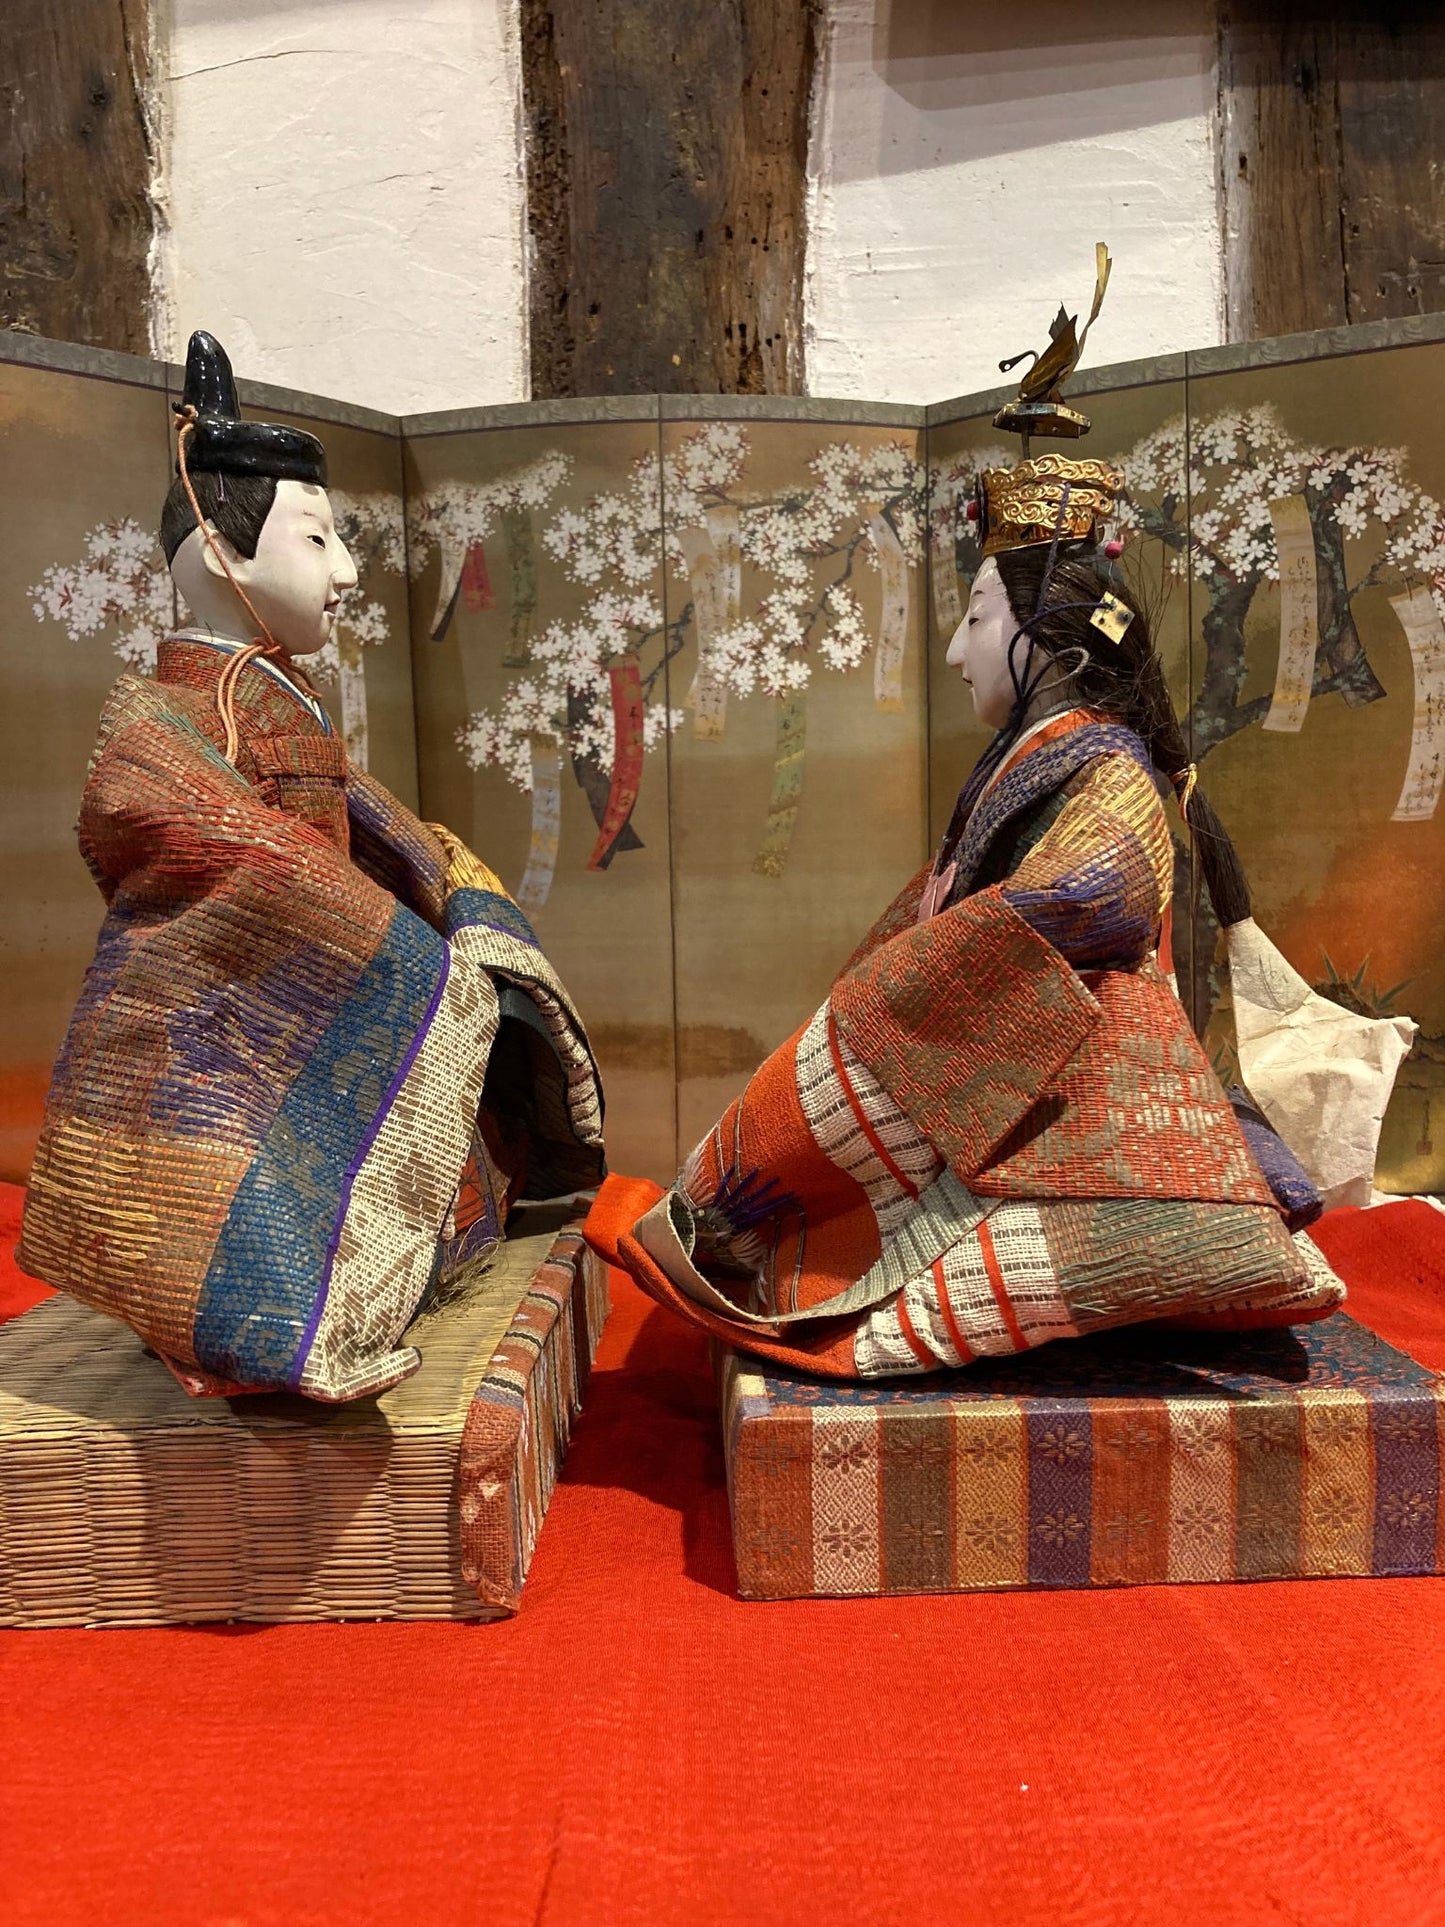 poupées japonaises pour la fête de Hina Matsuri (la fête des filles), représentant l'Empereur et l'Impératrice  de profil